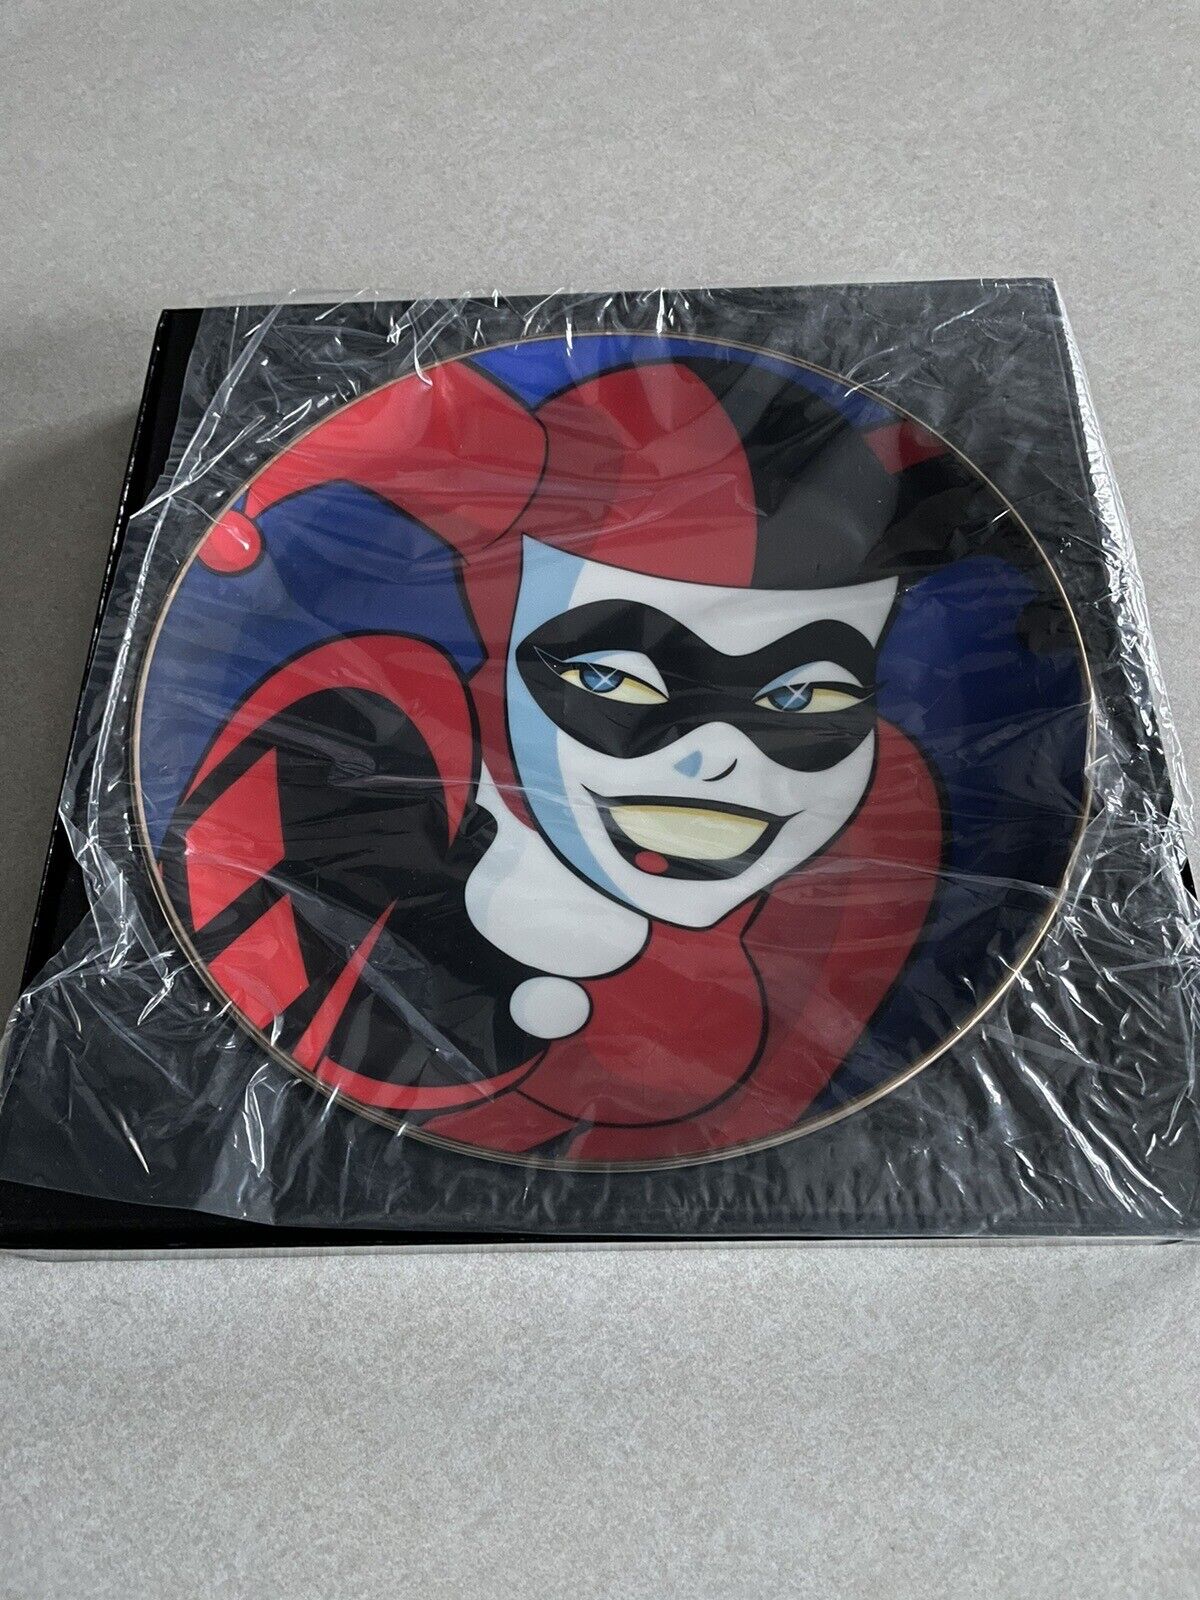 Vintage Warner Bros Gallery Batman Animated Series Harley Quinn Collectors Plate